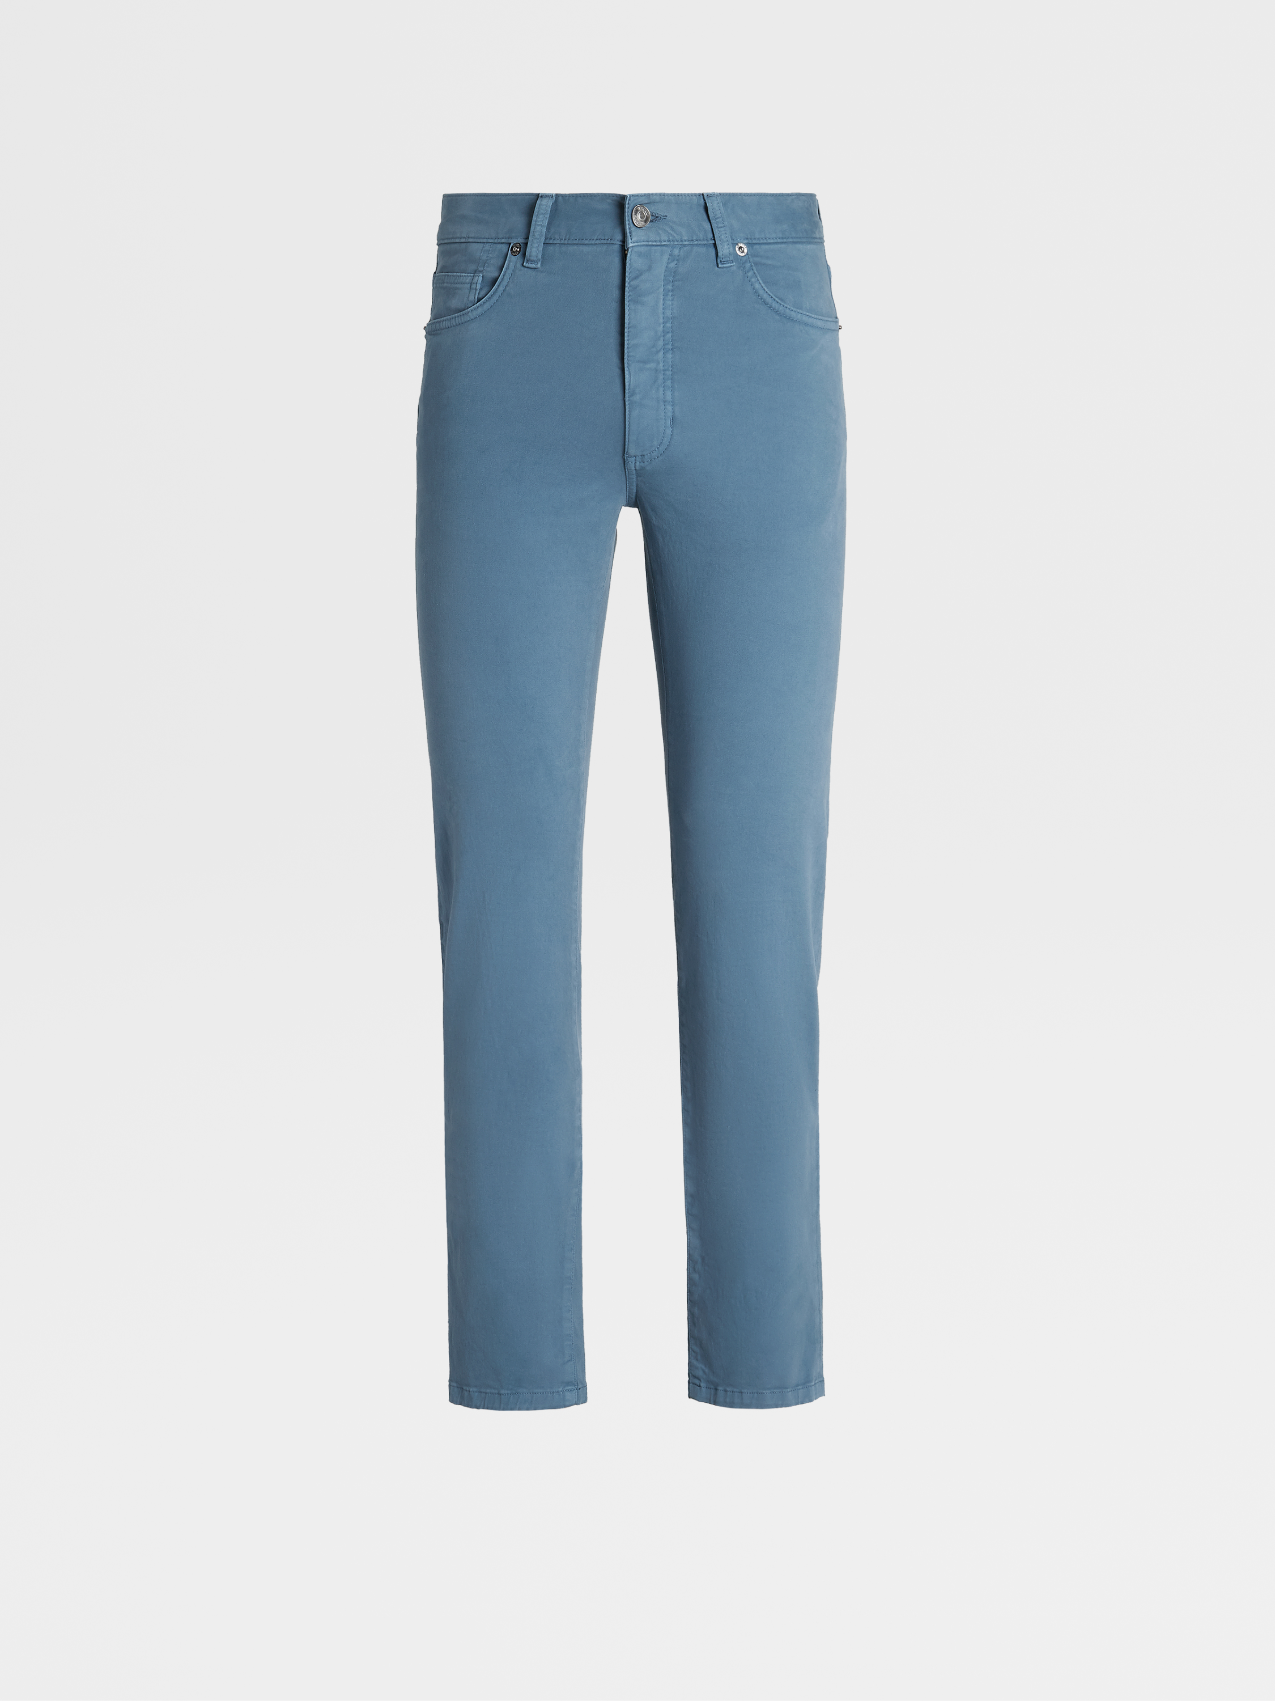 Light Teal Blue Stretch Cotton Gabardine 5-Pocket Jeans